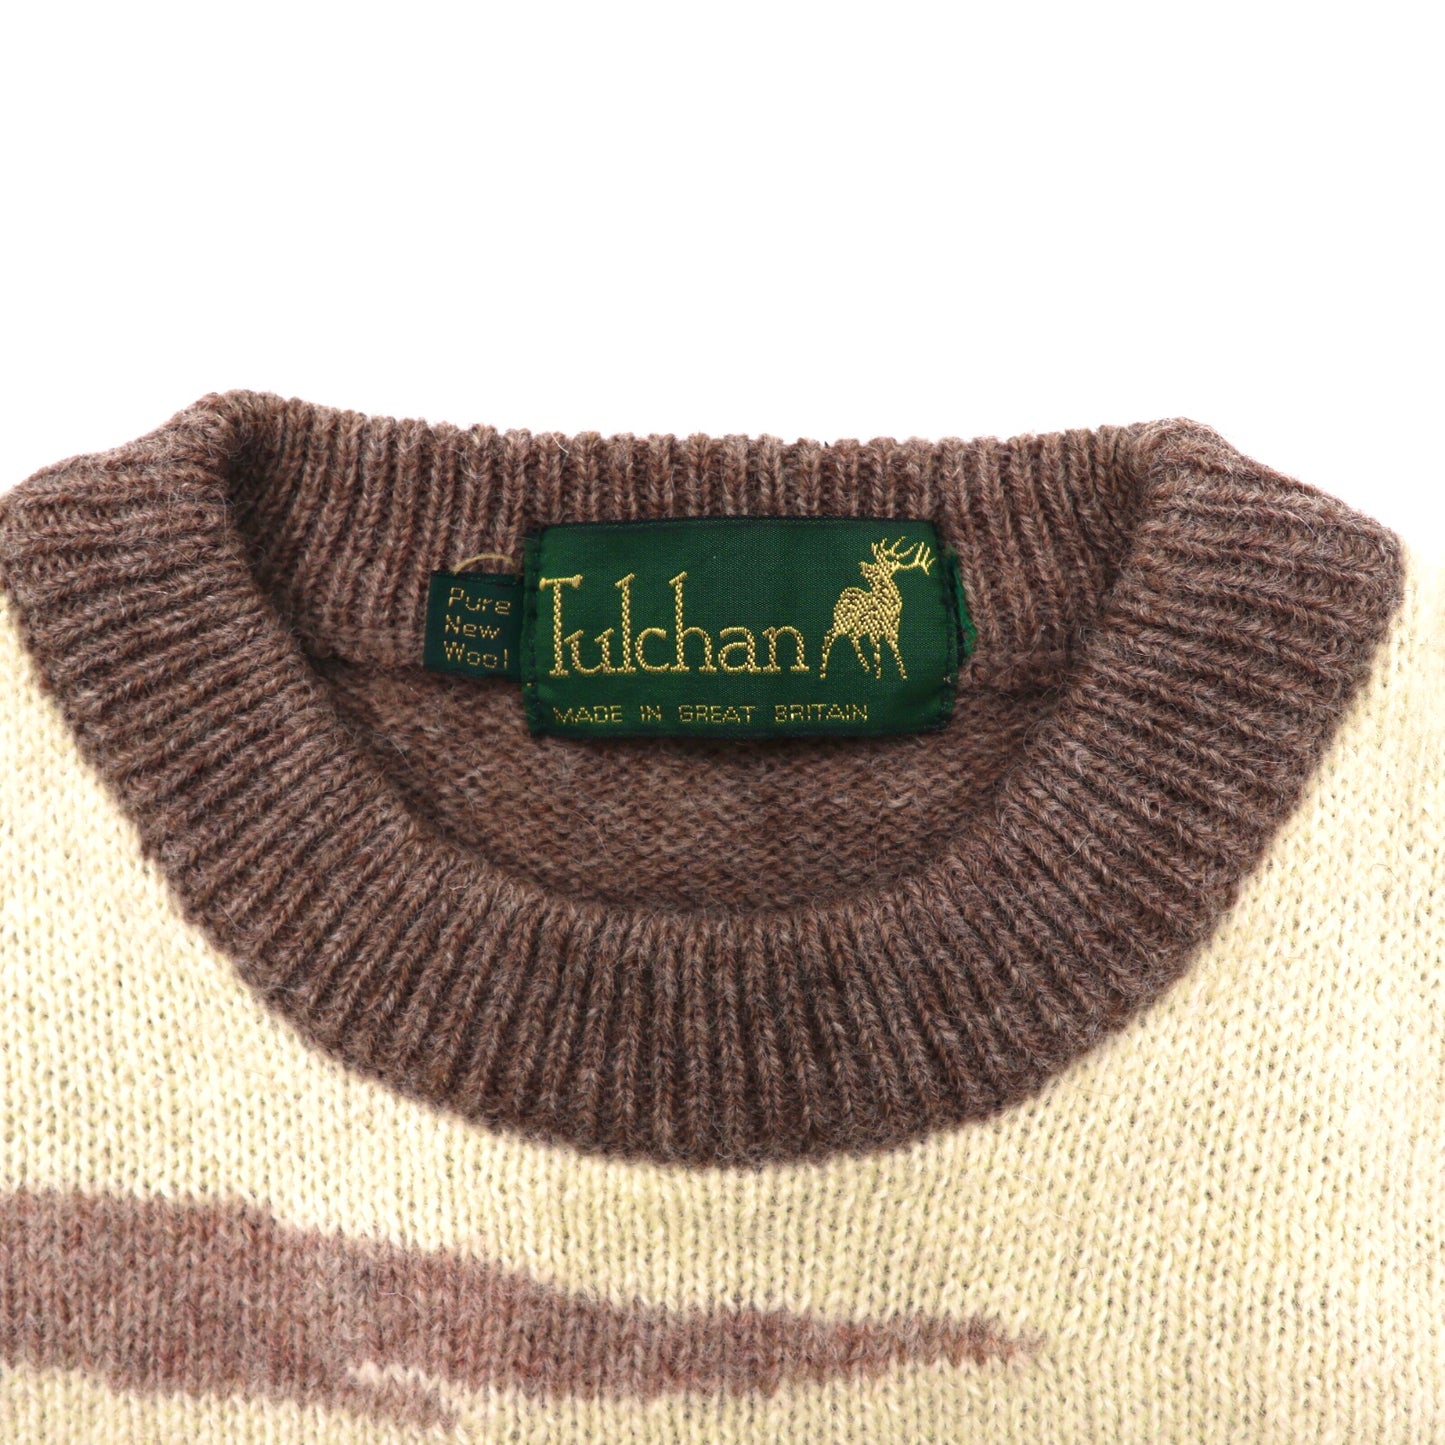 Tulchan クルーネックニットセーター M ブラウン ウール 風景柄 イギリス製